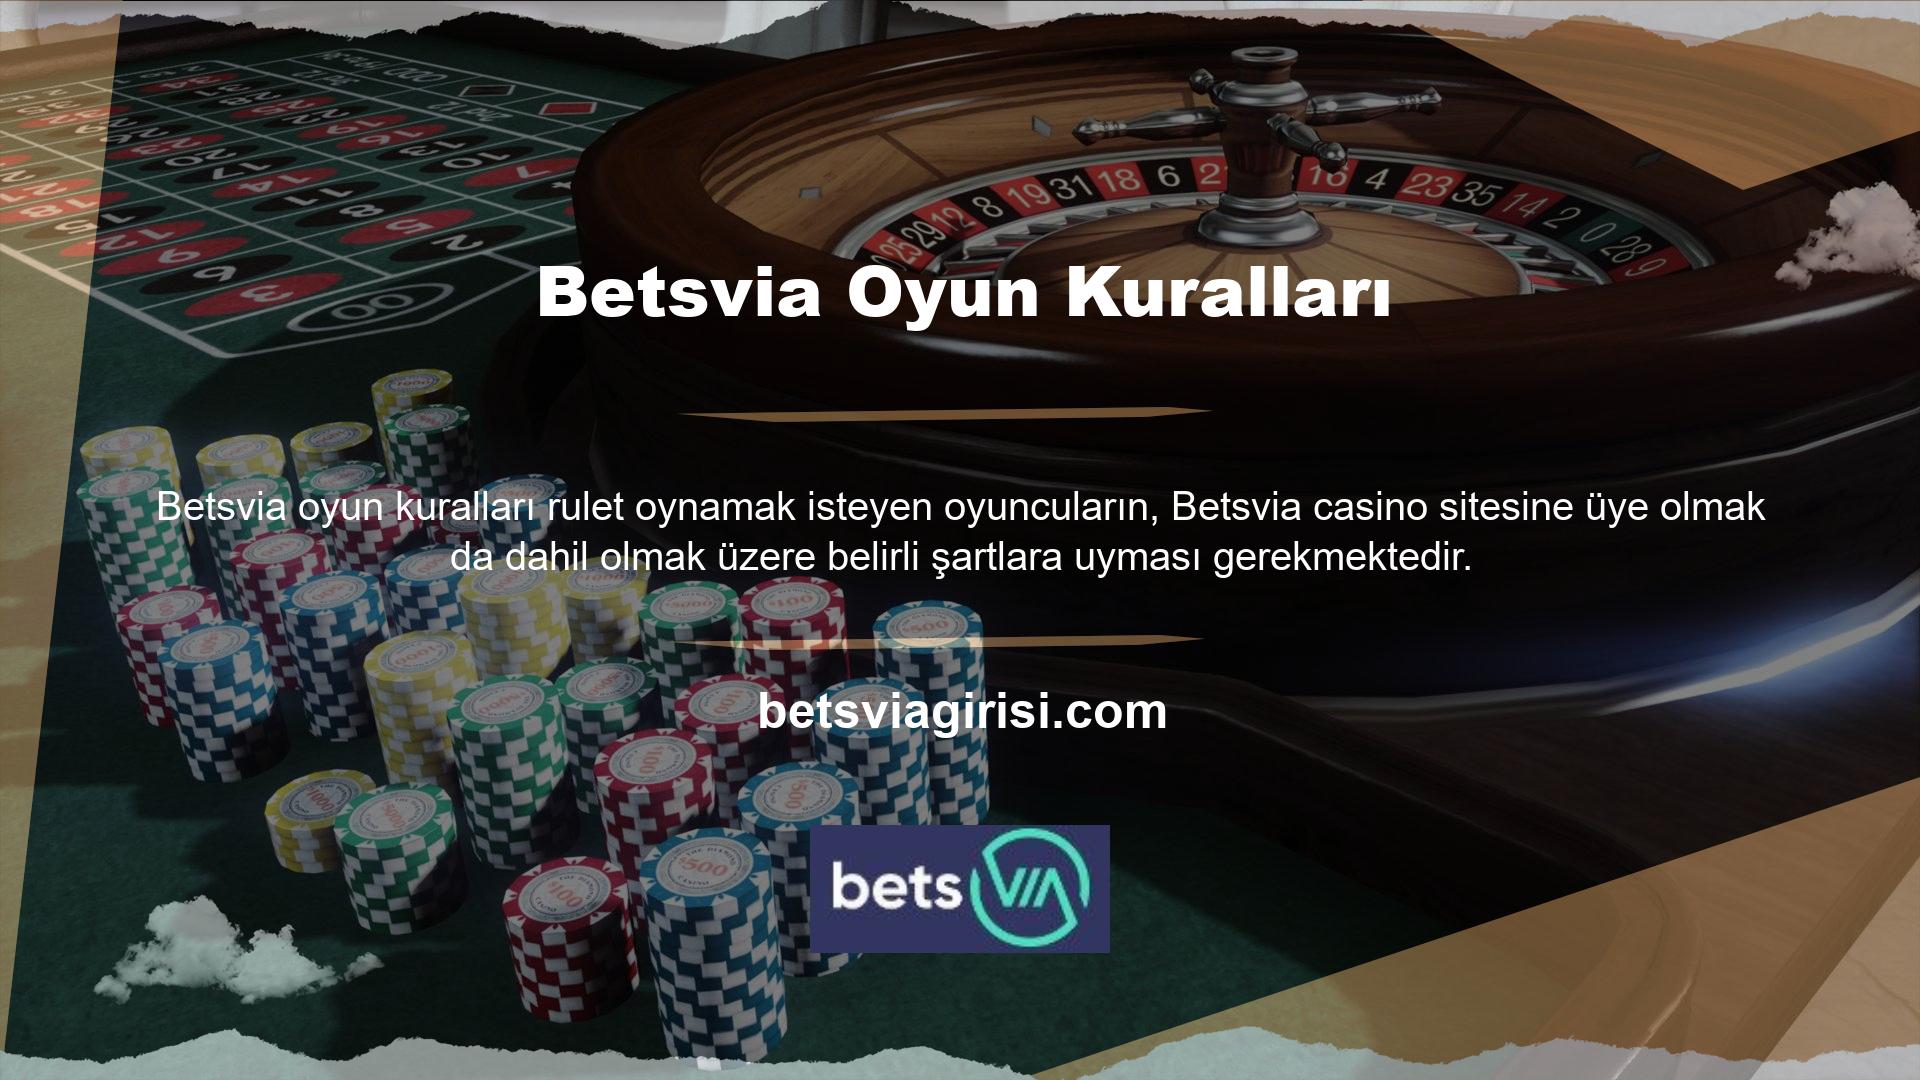 İkinci aşamada katılımcı, bu hesaba para yatırarak bir hesap açar, Betsvia oyun kuralları web sitesindeki canlı casino bölümünden sağlayıcının sunduğu Fransız rulet oyununu seçer ve bahis yapmaya başlar